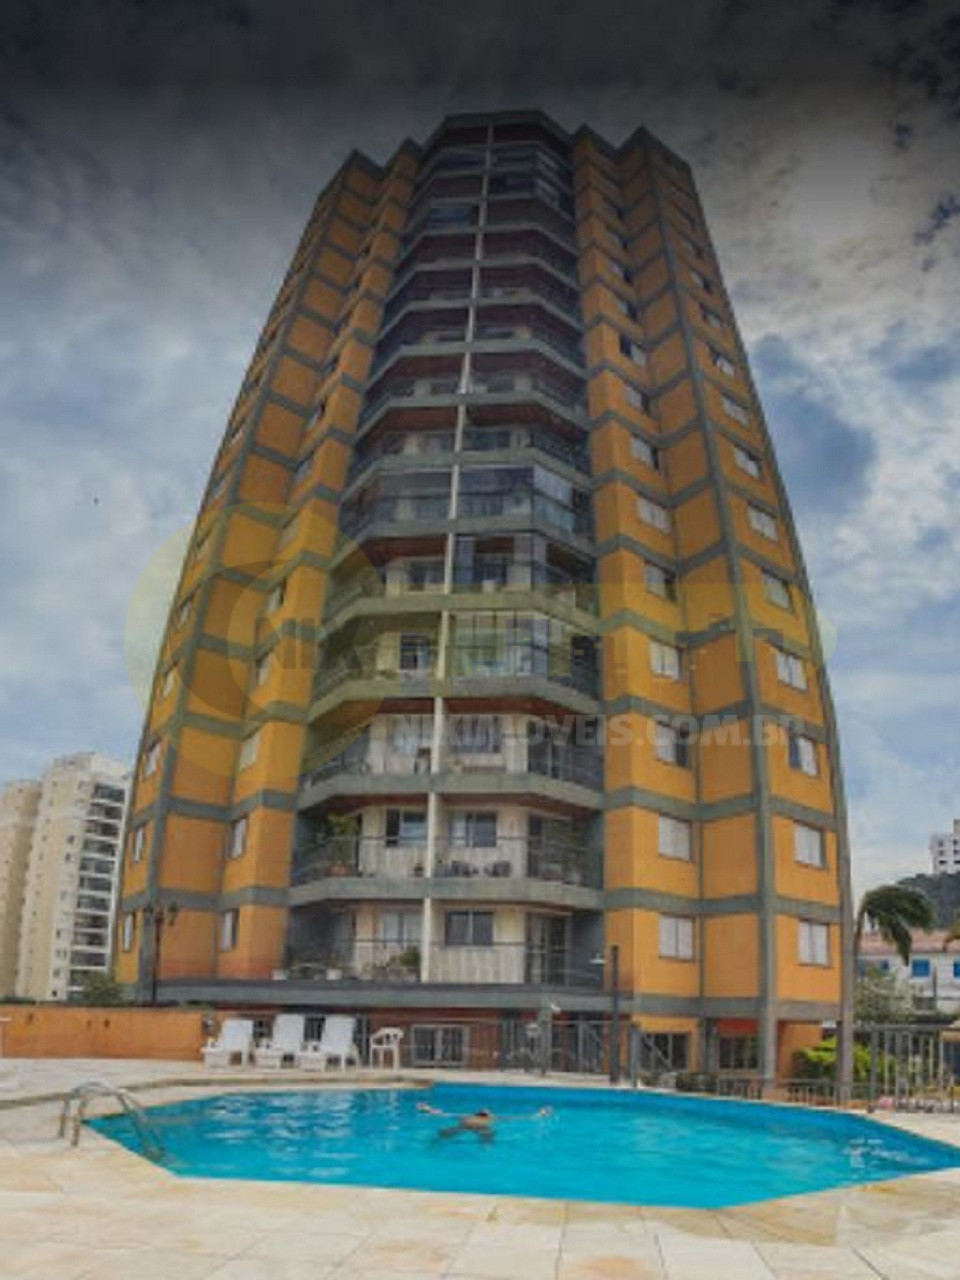 Aluga apartamento Butanta morar perto USP mobiliado totalmente. Travessa Avenida Corifeu, localização incrível. Amplo com 3 quartos, 1 suíte. Completissímo!